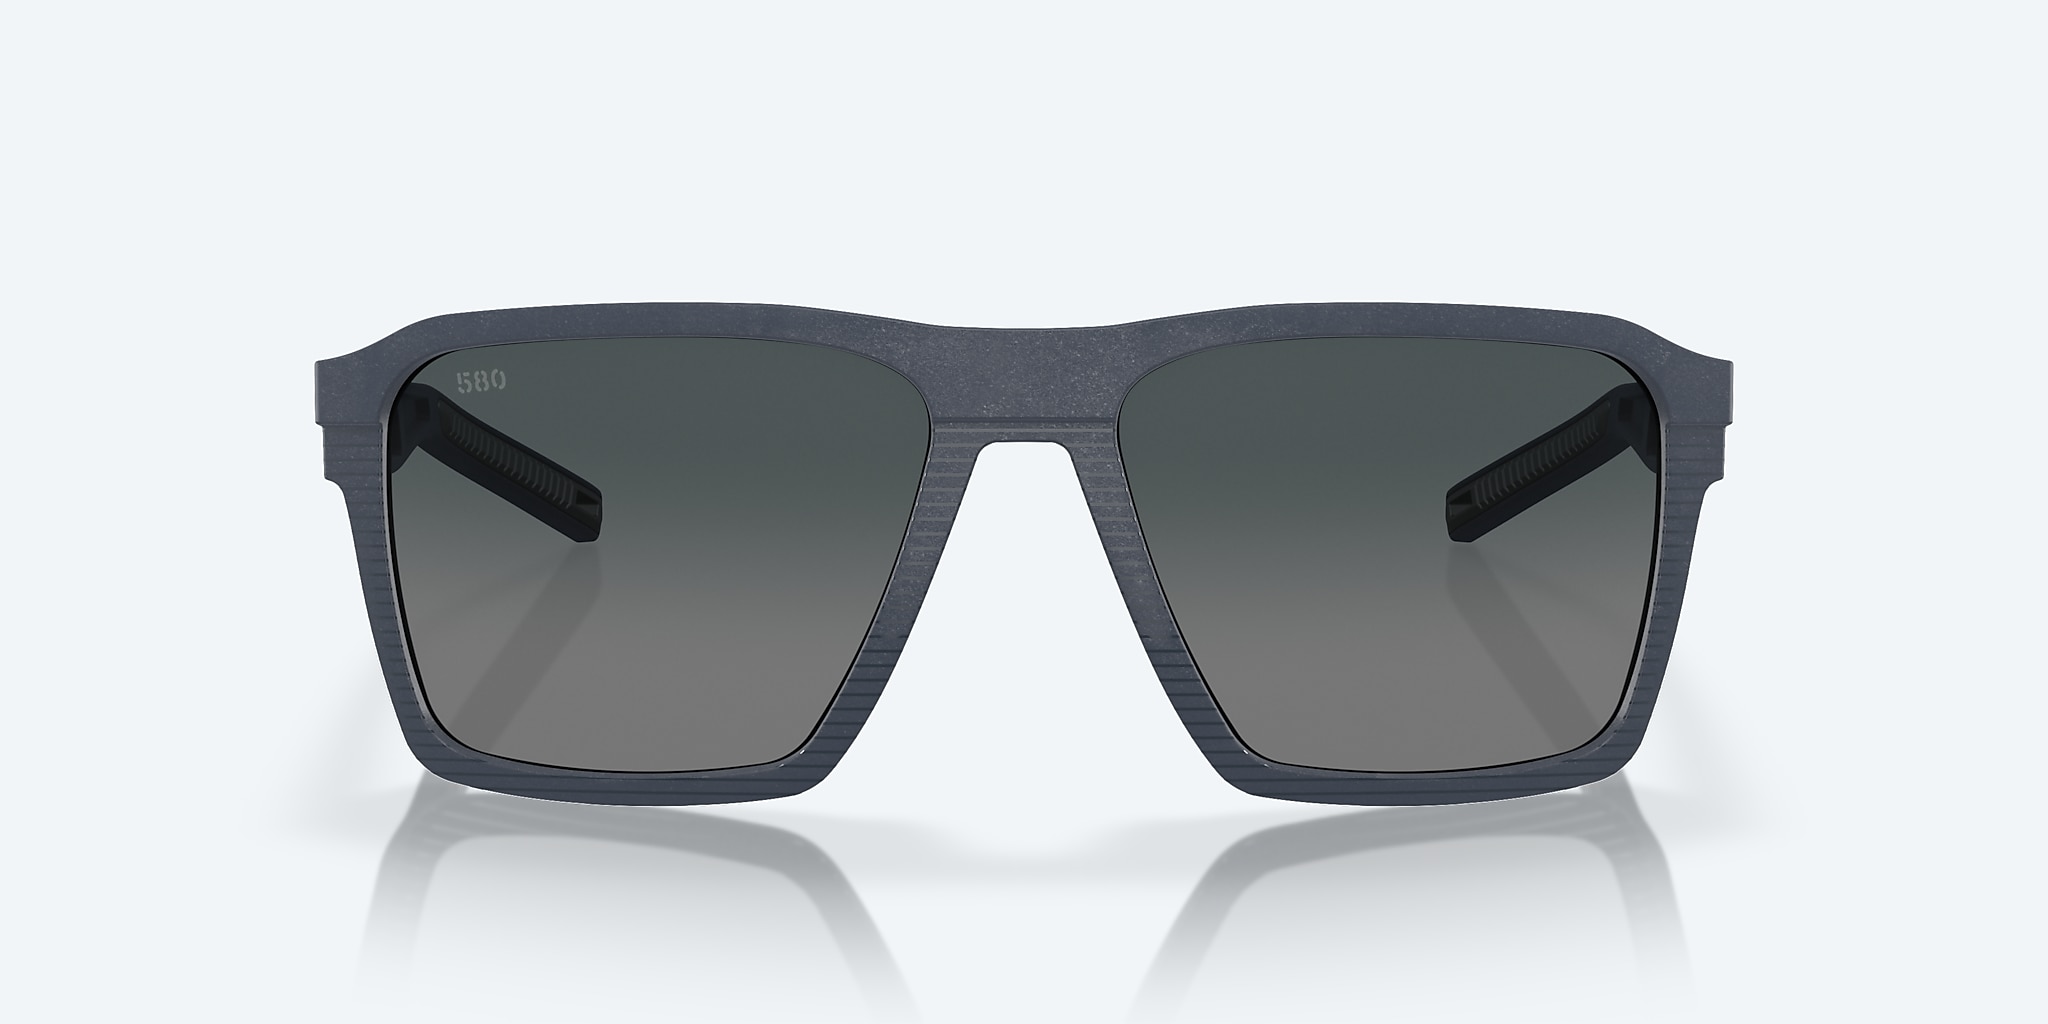 Antille Polarized Sunglasses in Gray Gradient | Costa Del Mar®